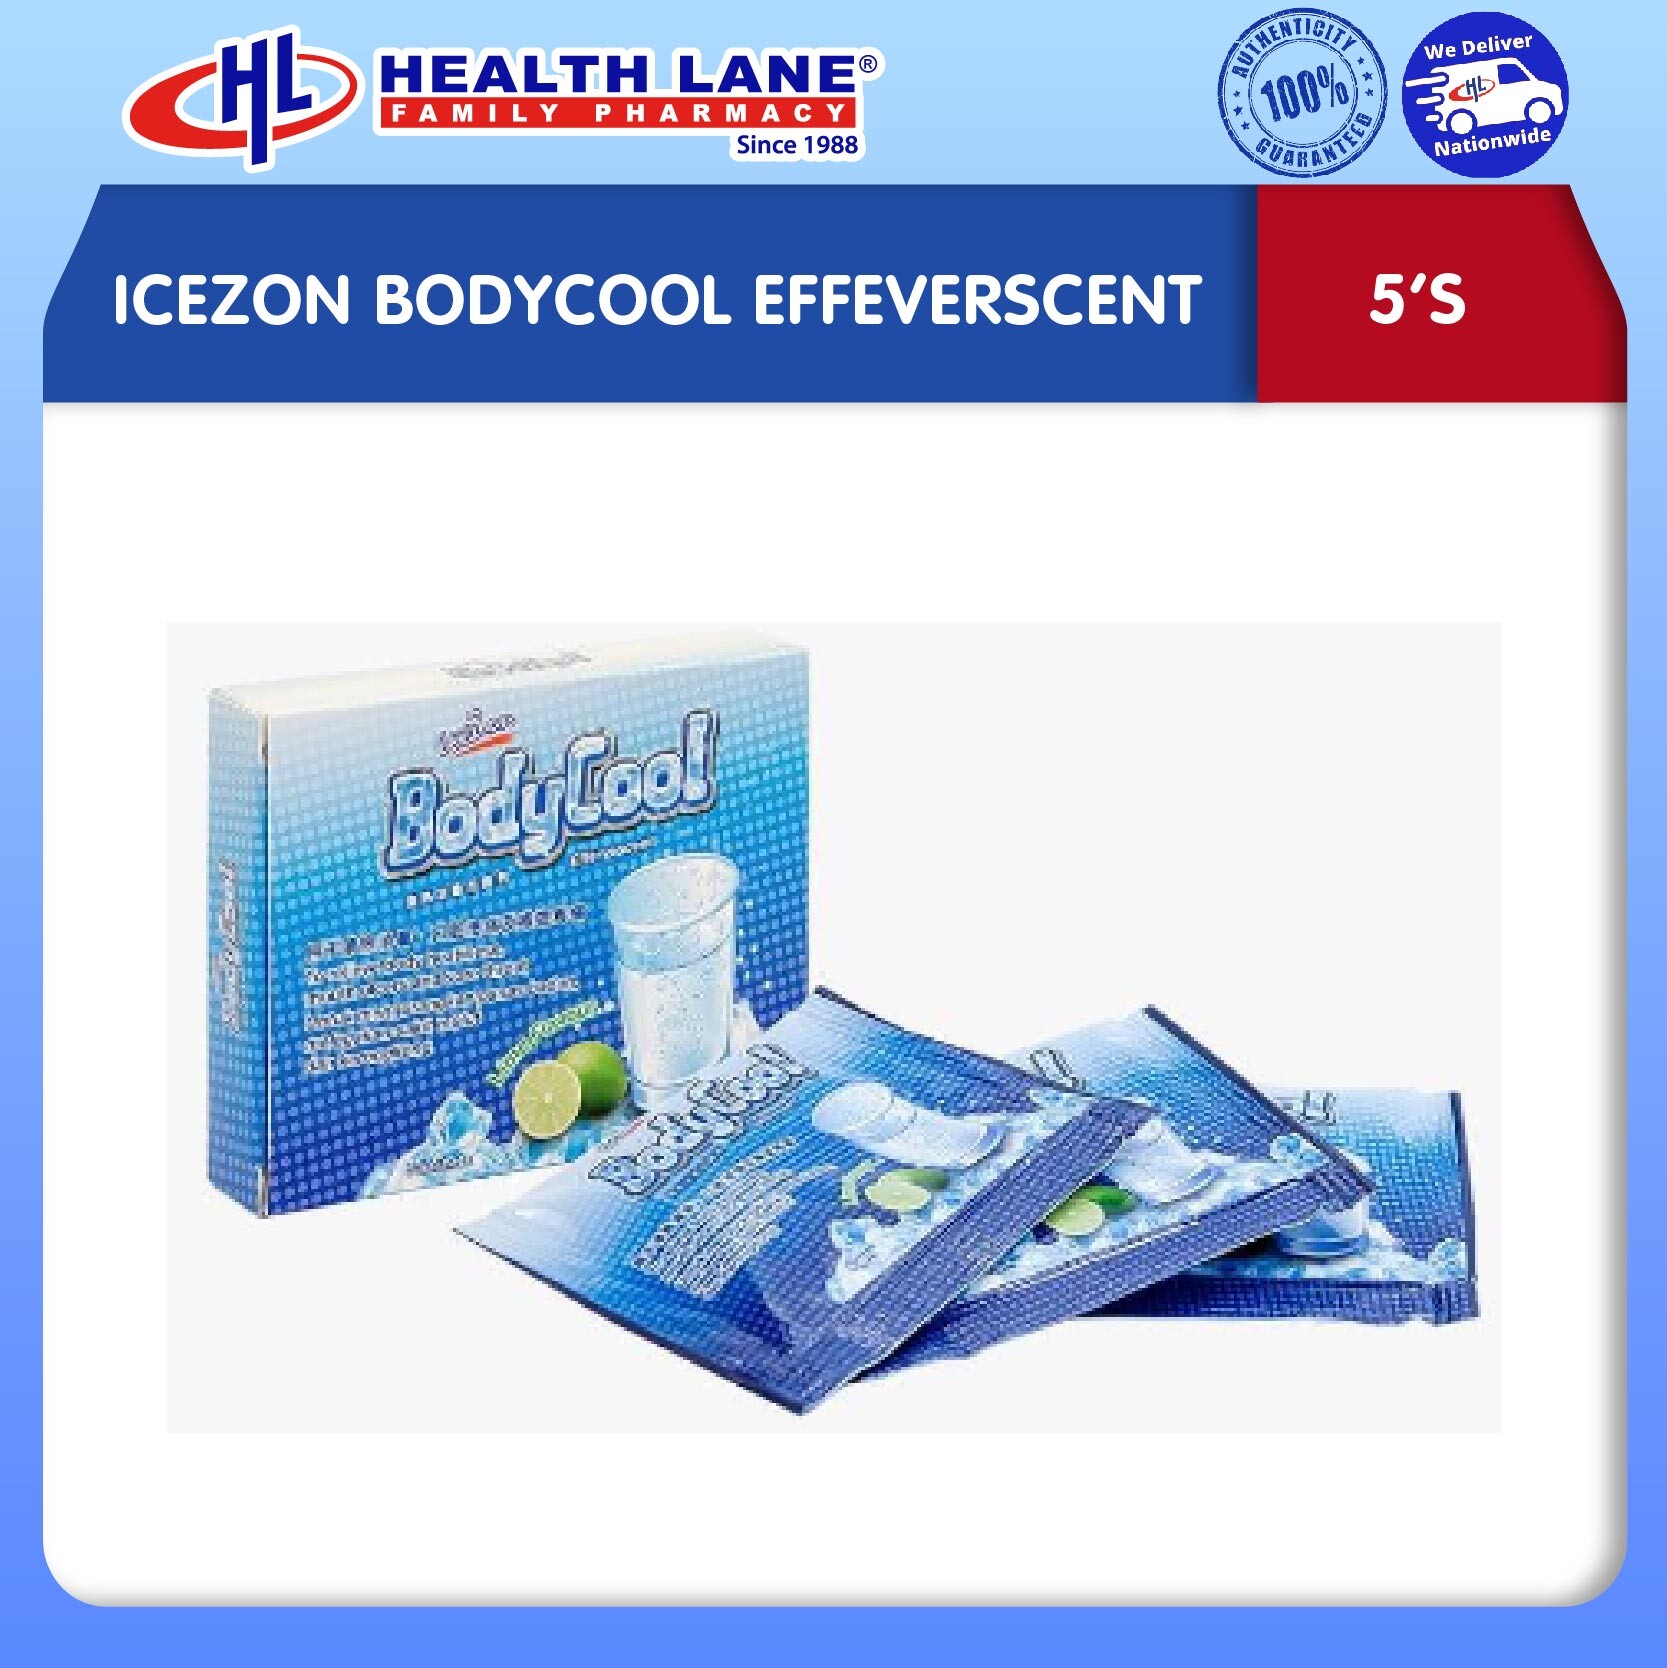 ICEZON BODYCOOL EFFEVERSCENT (5'S)